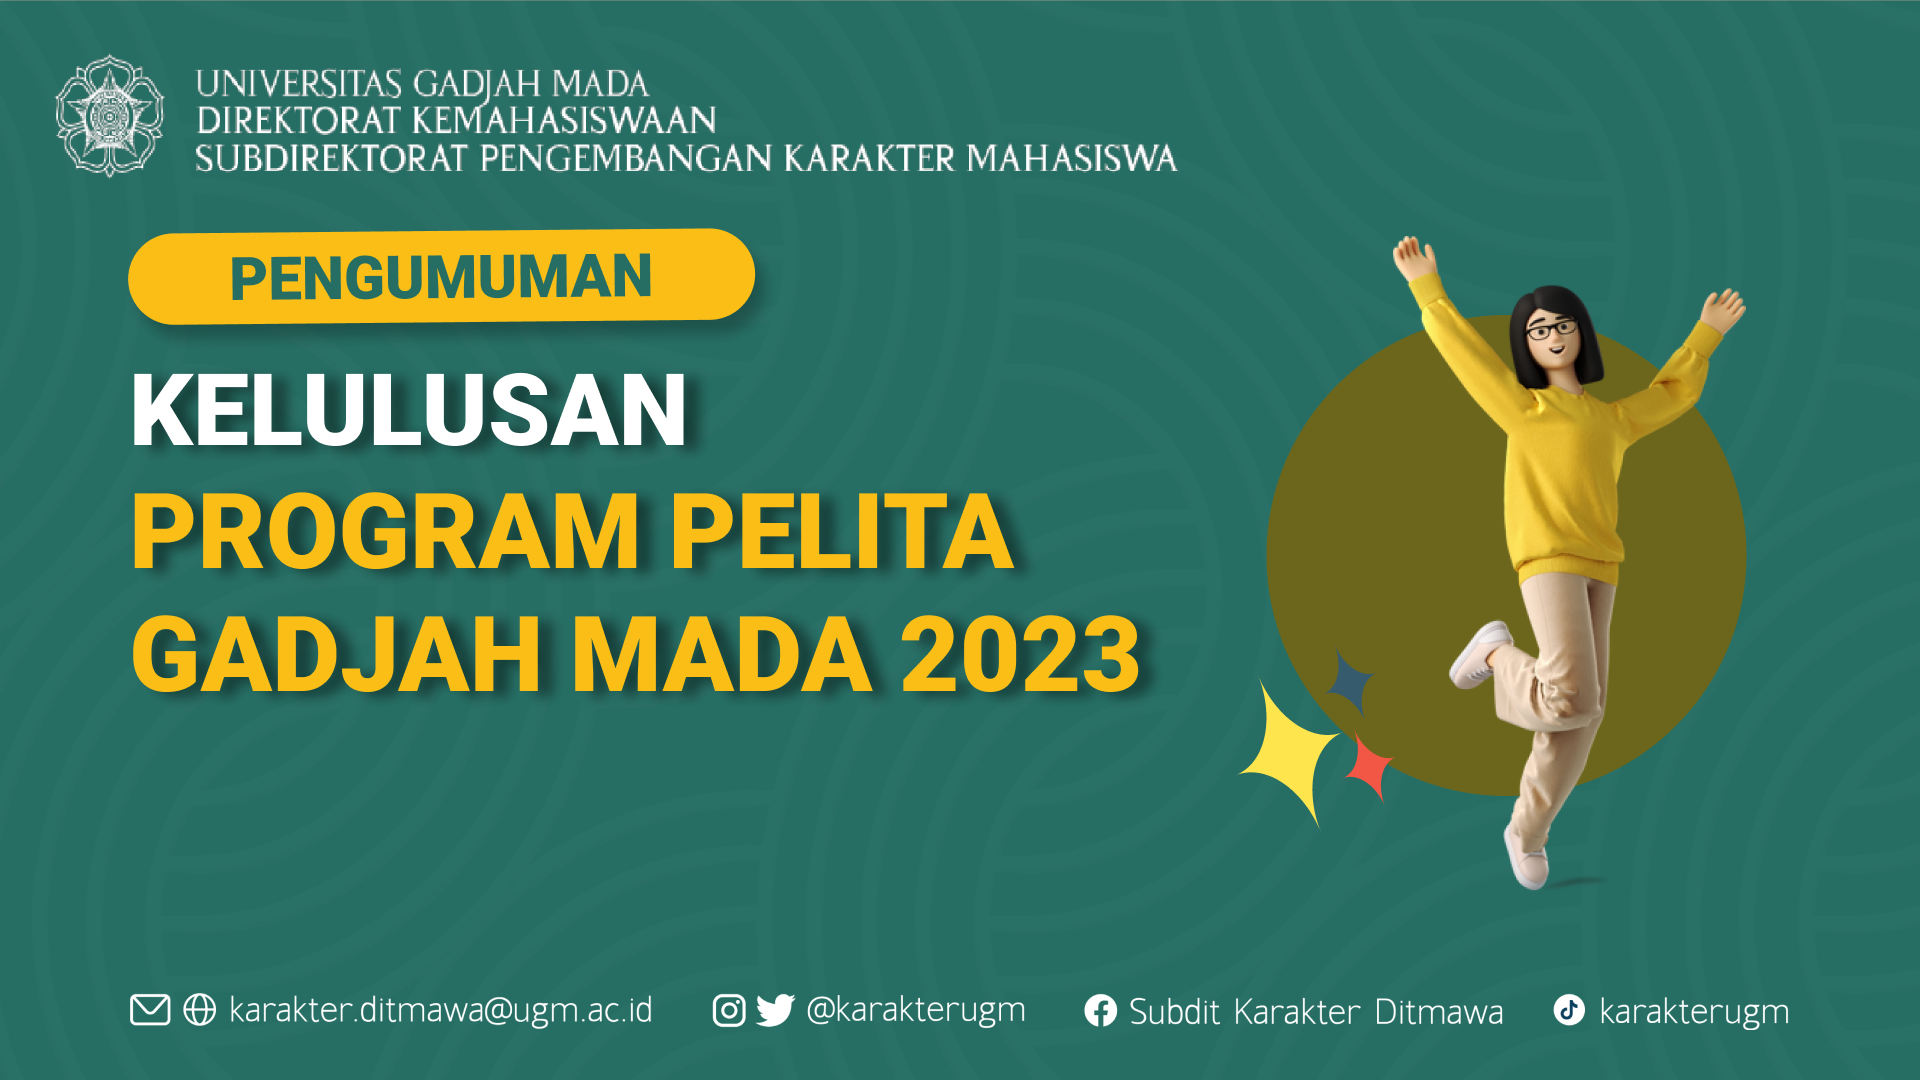 PENGUMUMAN PENETAPAN KELULUSAN PROGRAM PELITA GADJAH MADA 2023